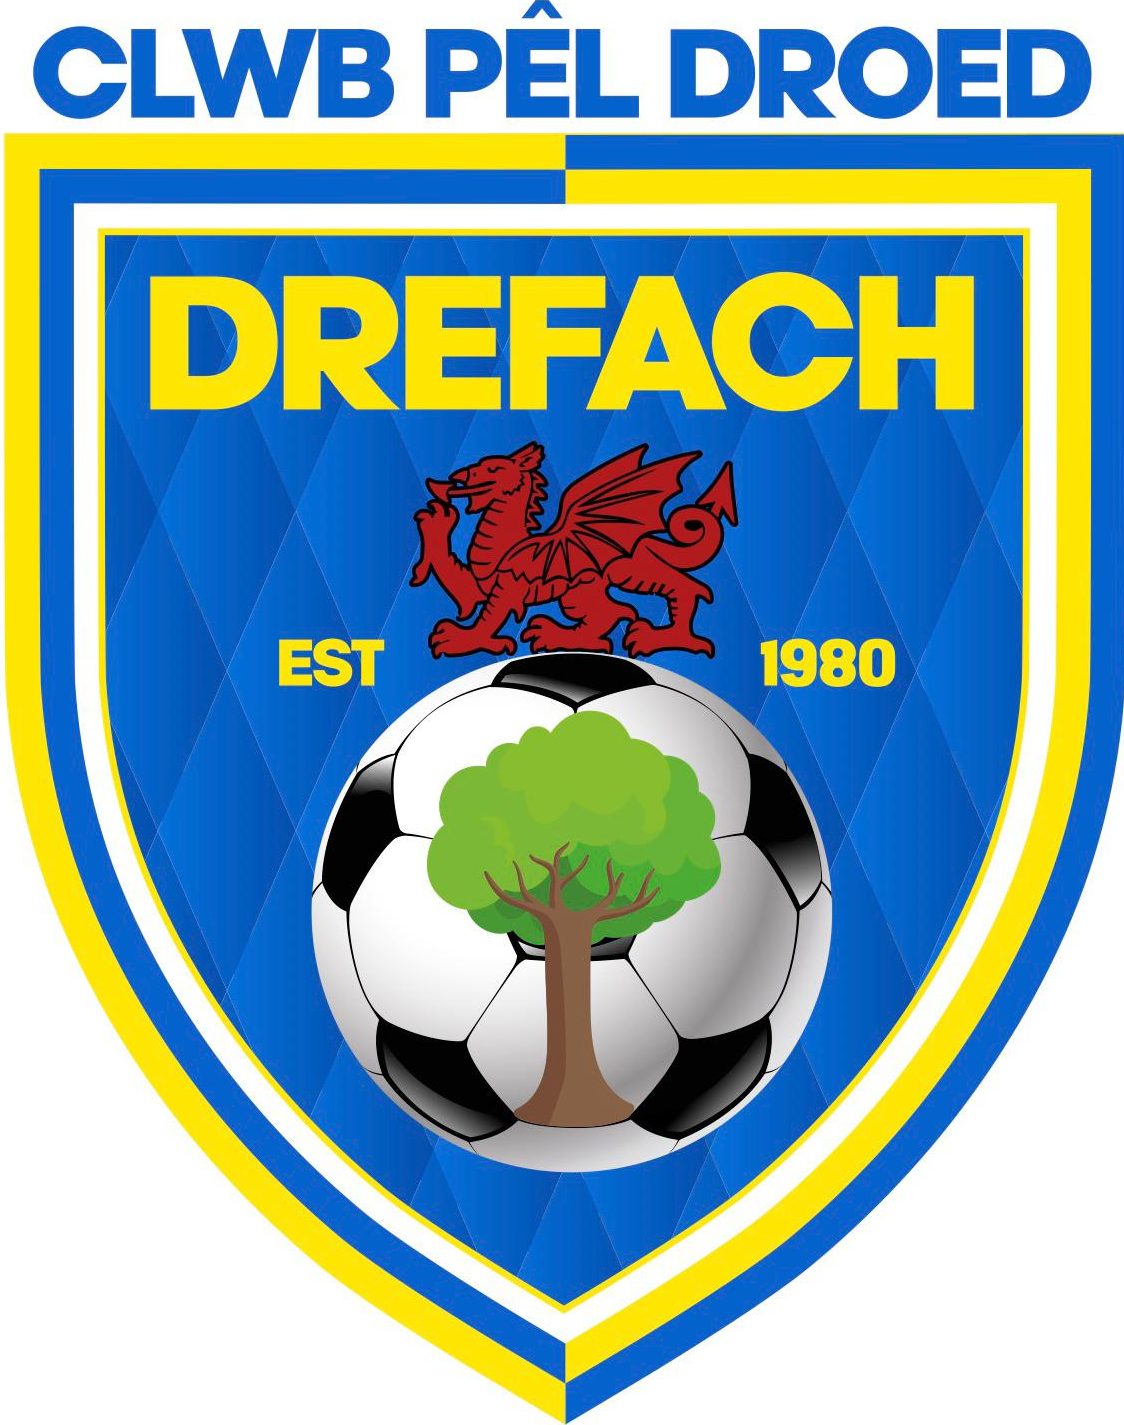 Drefach FC